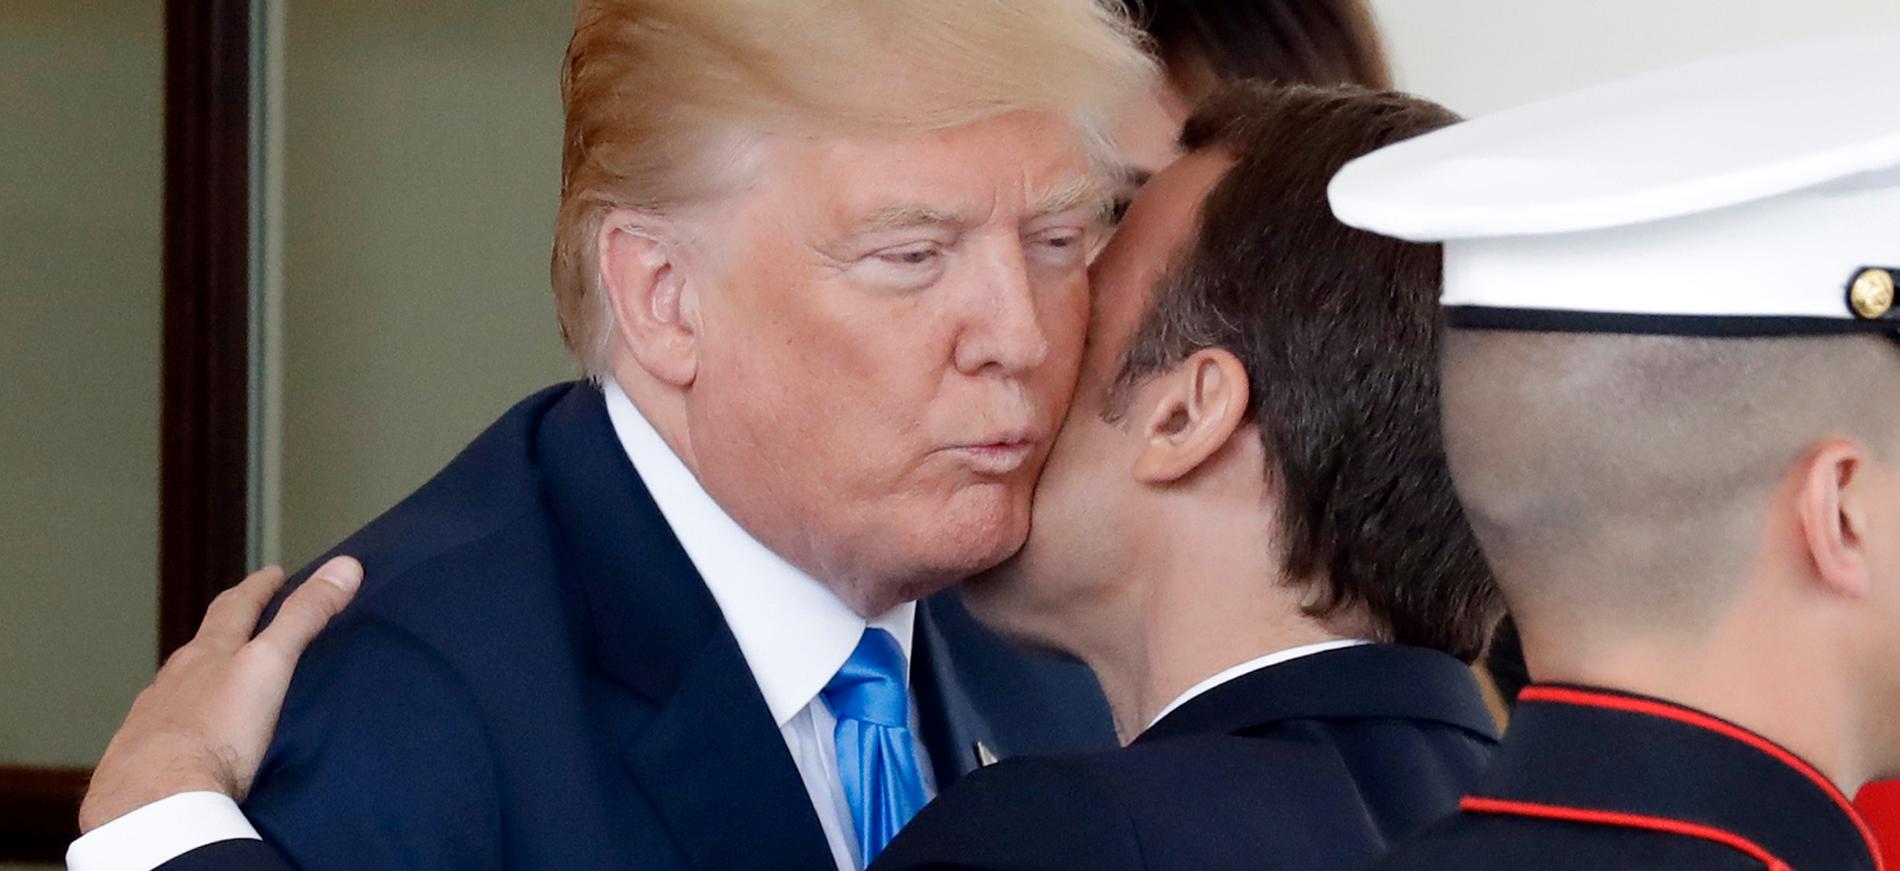 Donald Trump hälsade Emmanuel Macron välkommen i Washington i måndags.